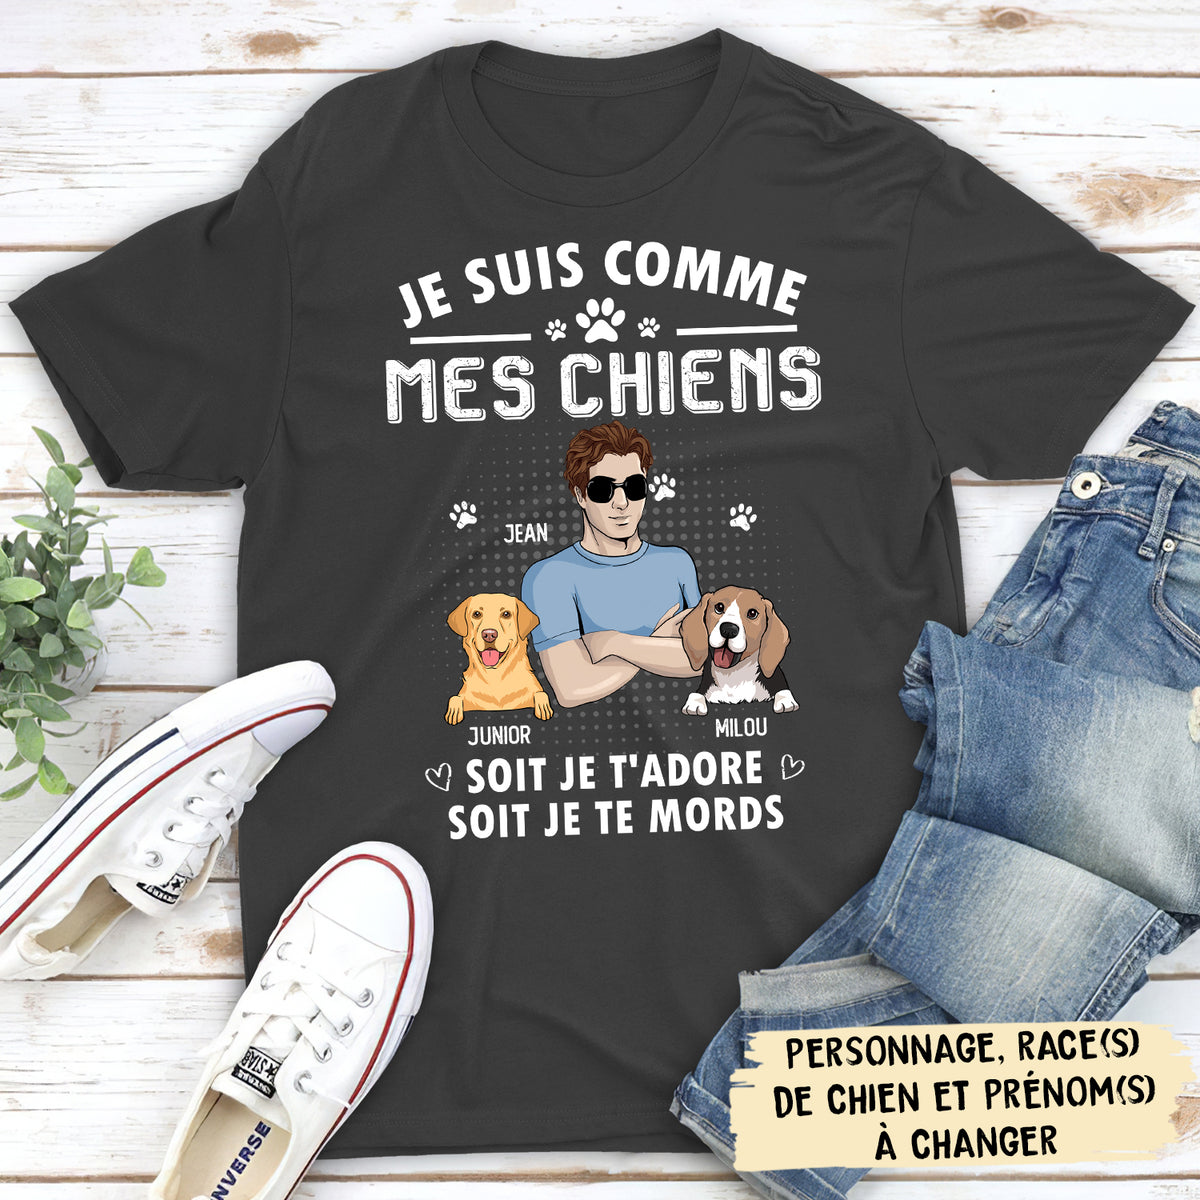 T-shirt Unisex Personnalisé - Je Suis Comme Mon Chien